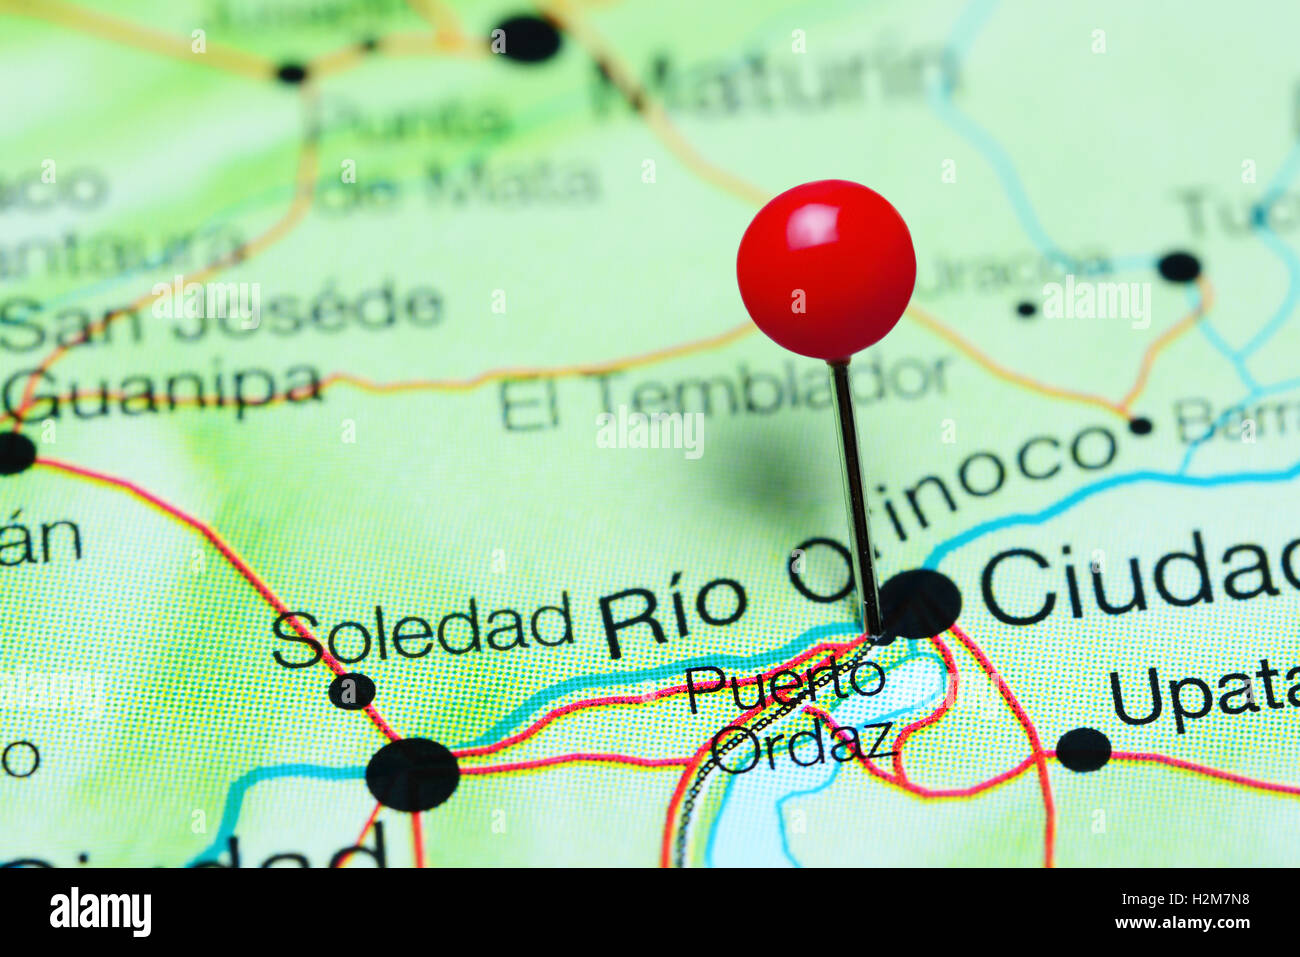 Puerto Ordaz anclado en un mapa de Venezuela Fotografía de stock - Alamy